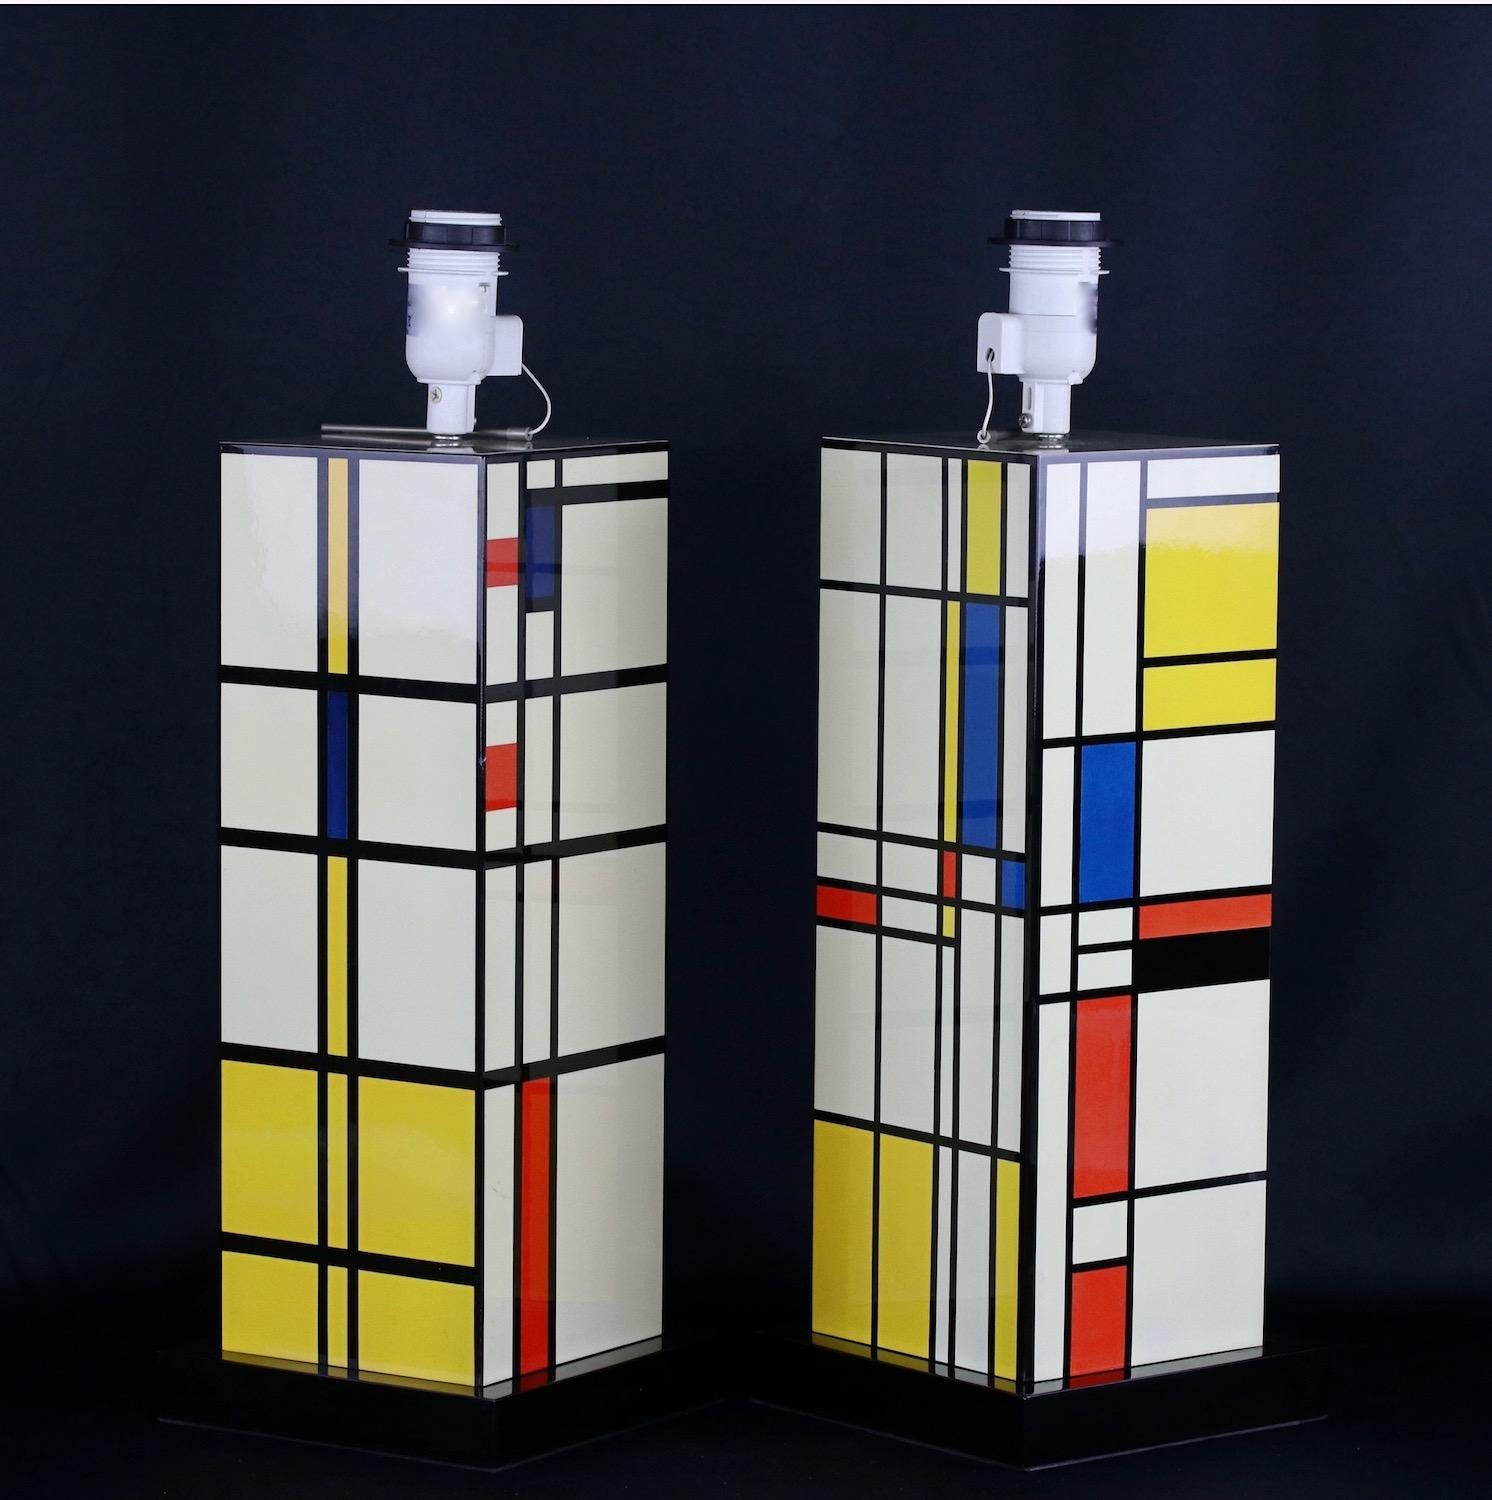 Paire de lampes composites décoratives du 20e siècle dans le style de Piet Mondrian. Deuxième moitié du 20e siècle. Probablement dans les années 1960. Avec des nuances. 
La hauteur de 49cm est sans l'ombre.

Piet Mondrian (1872-1944), né aux